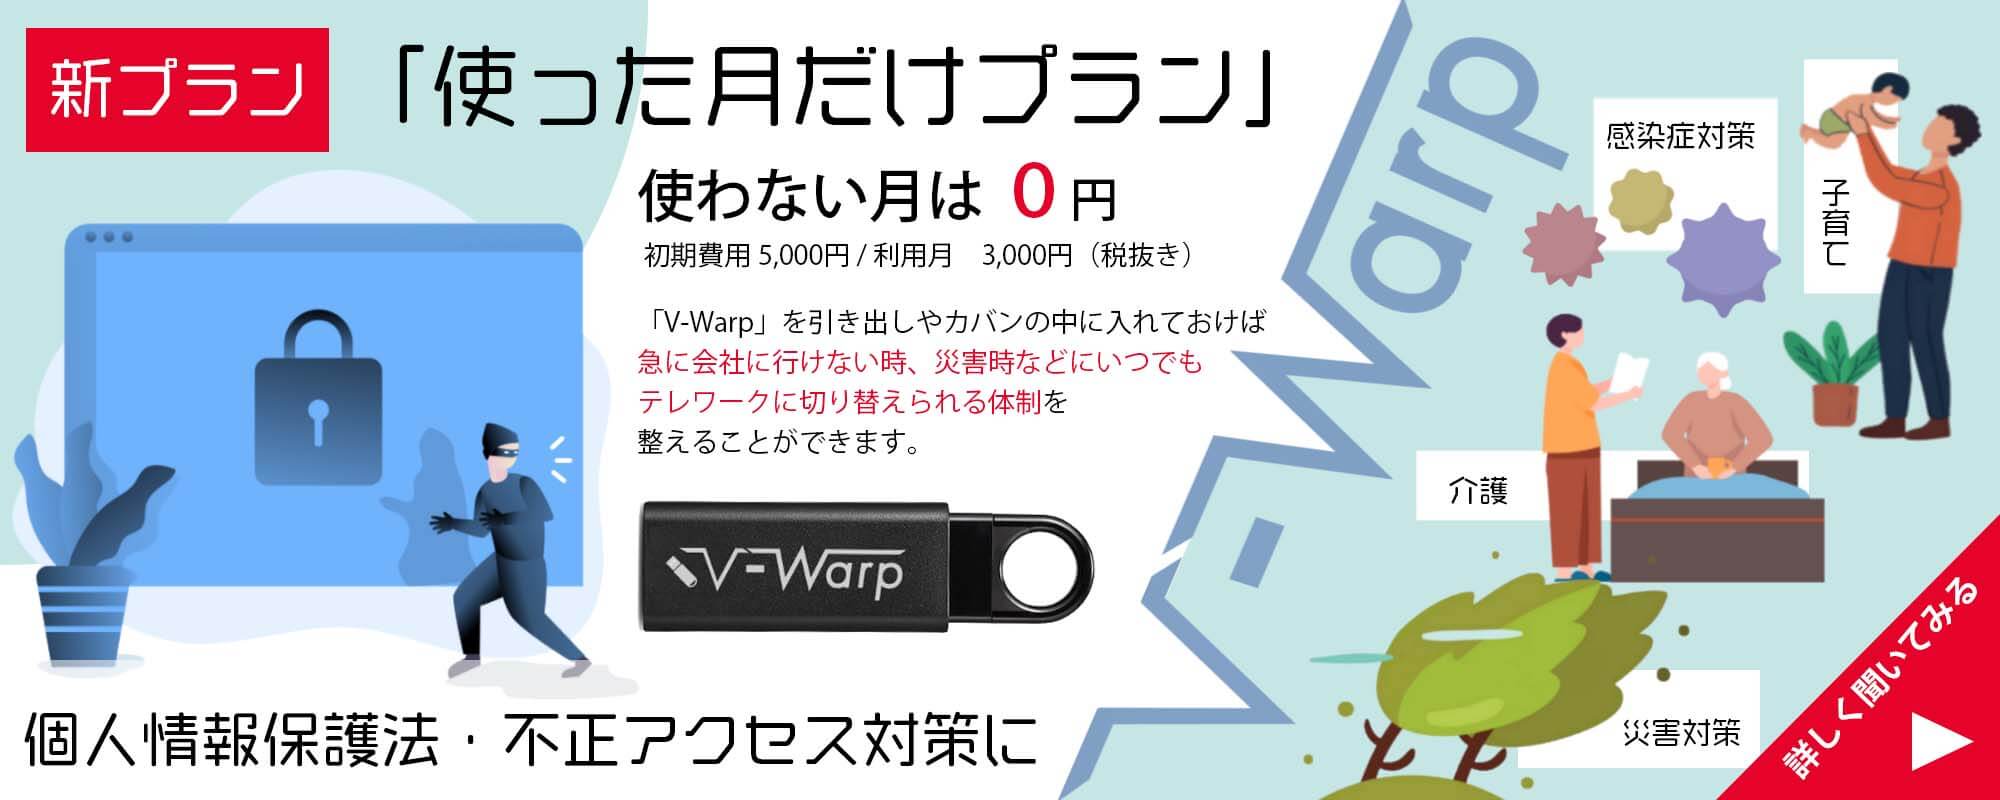 リモートアクセス「V-Warp」新プラン